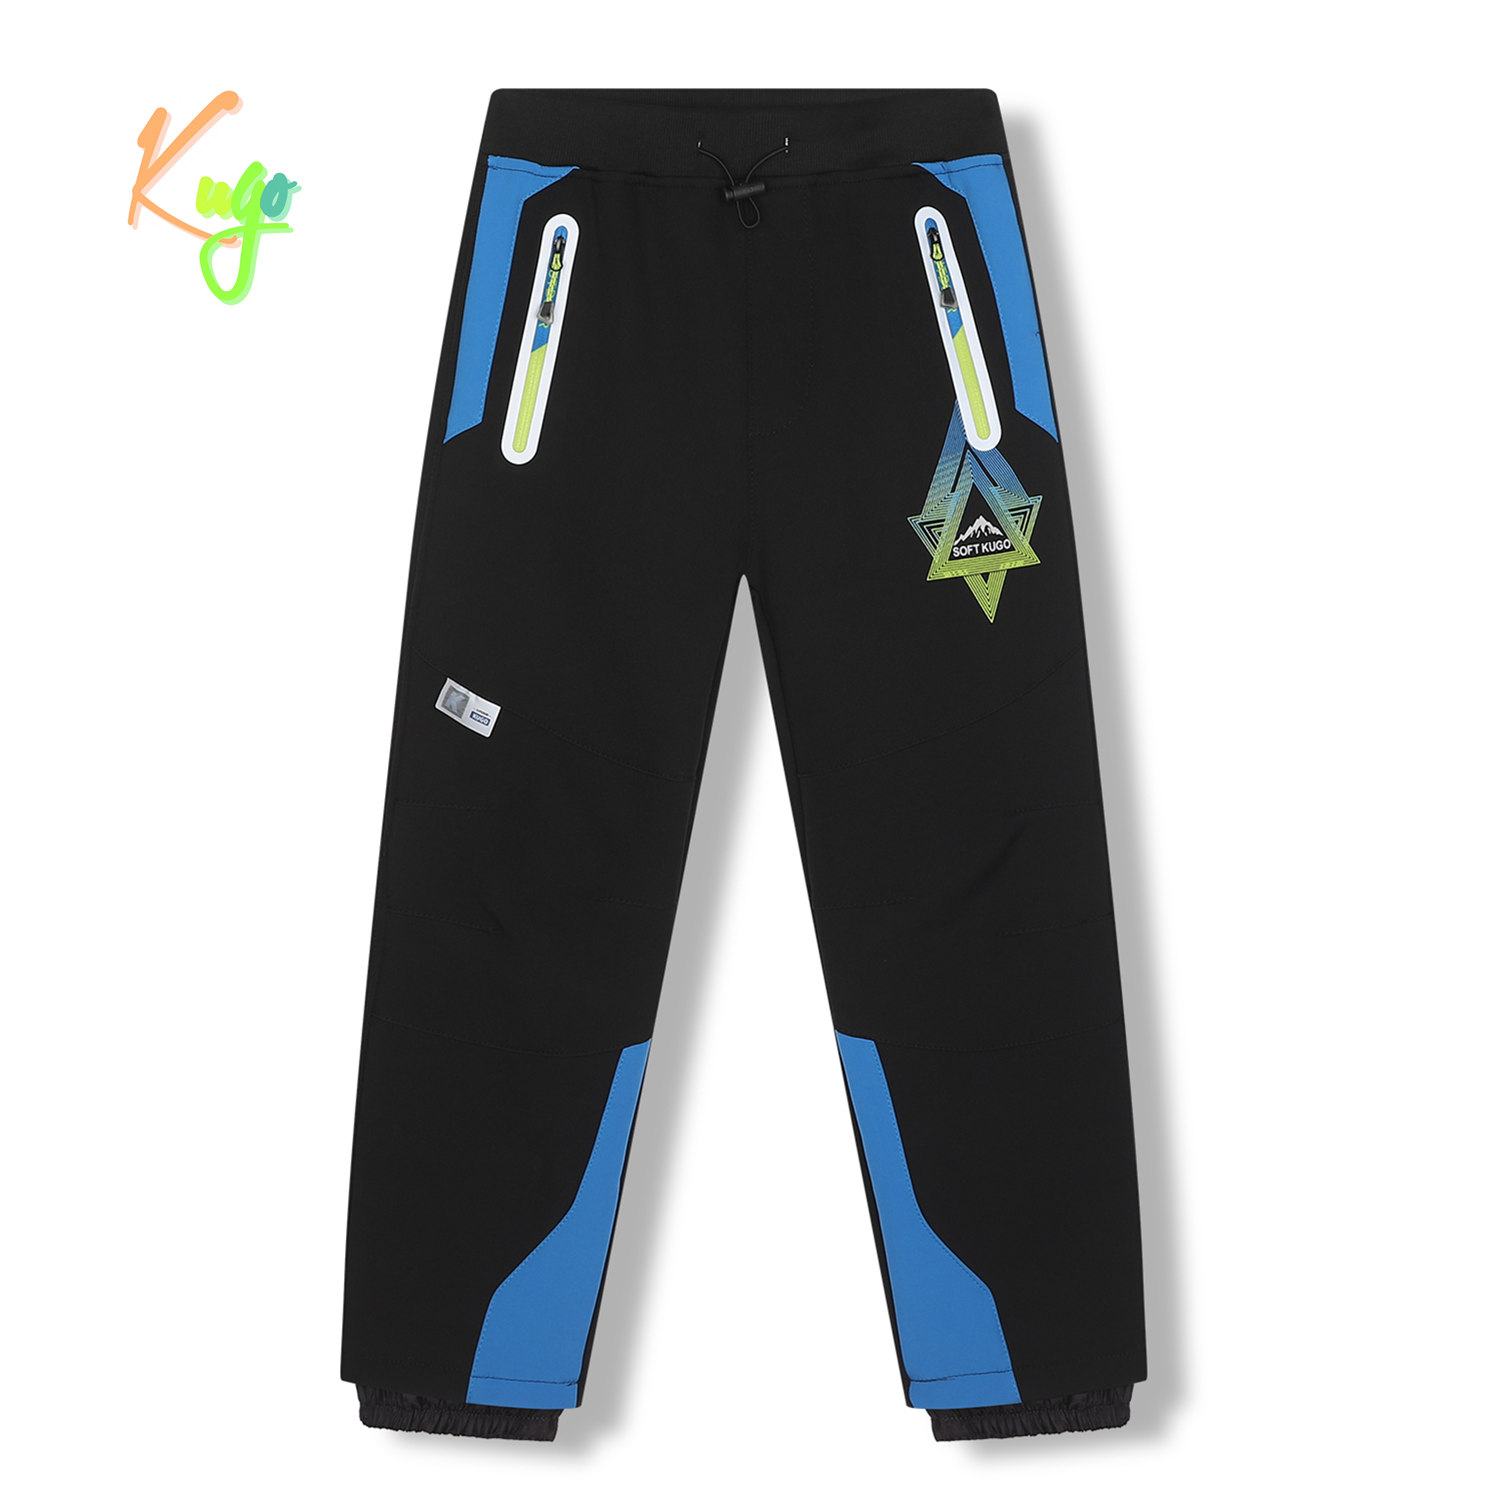 Chlapecké softshellové kalhoty, zateplené - KUGO HK5620, černá / modrá aplikace Barva: Černá, Velikost: 128